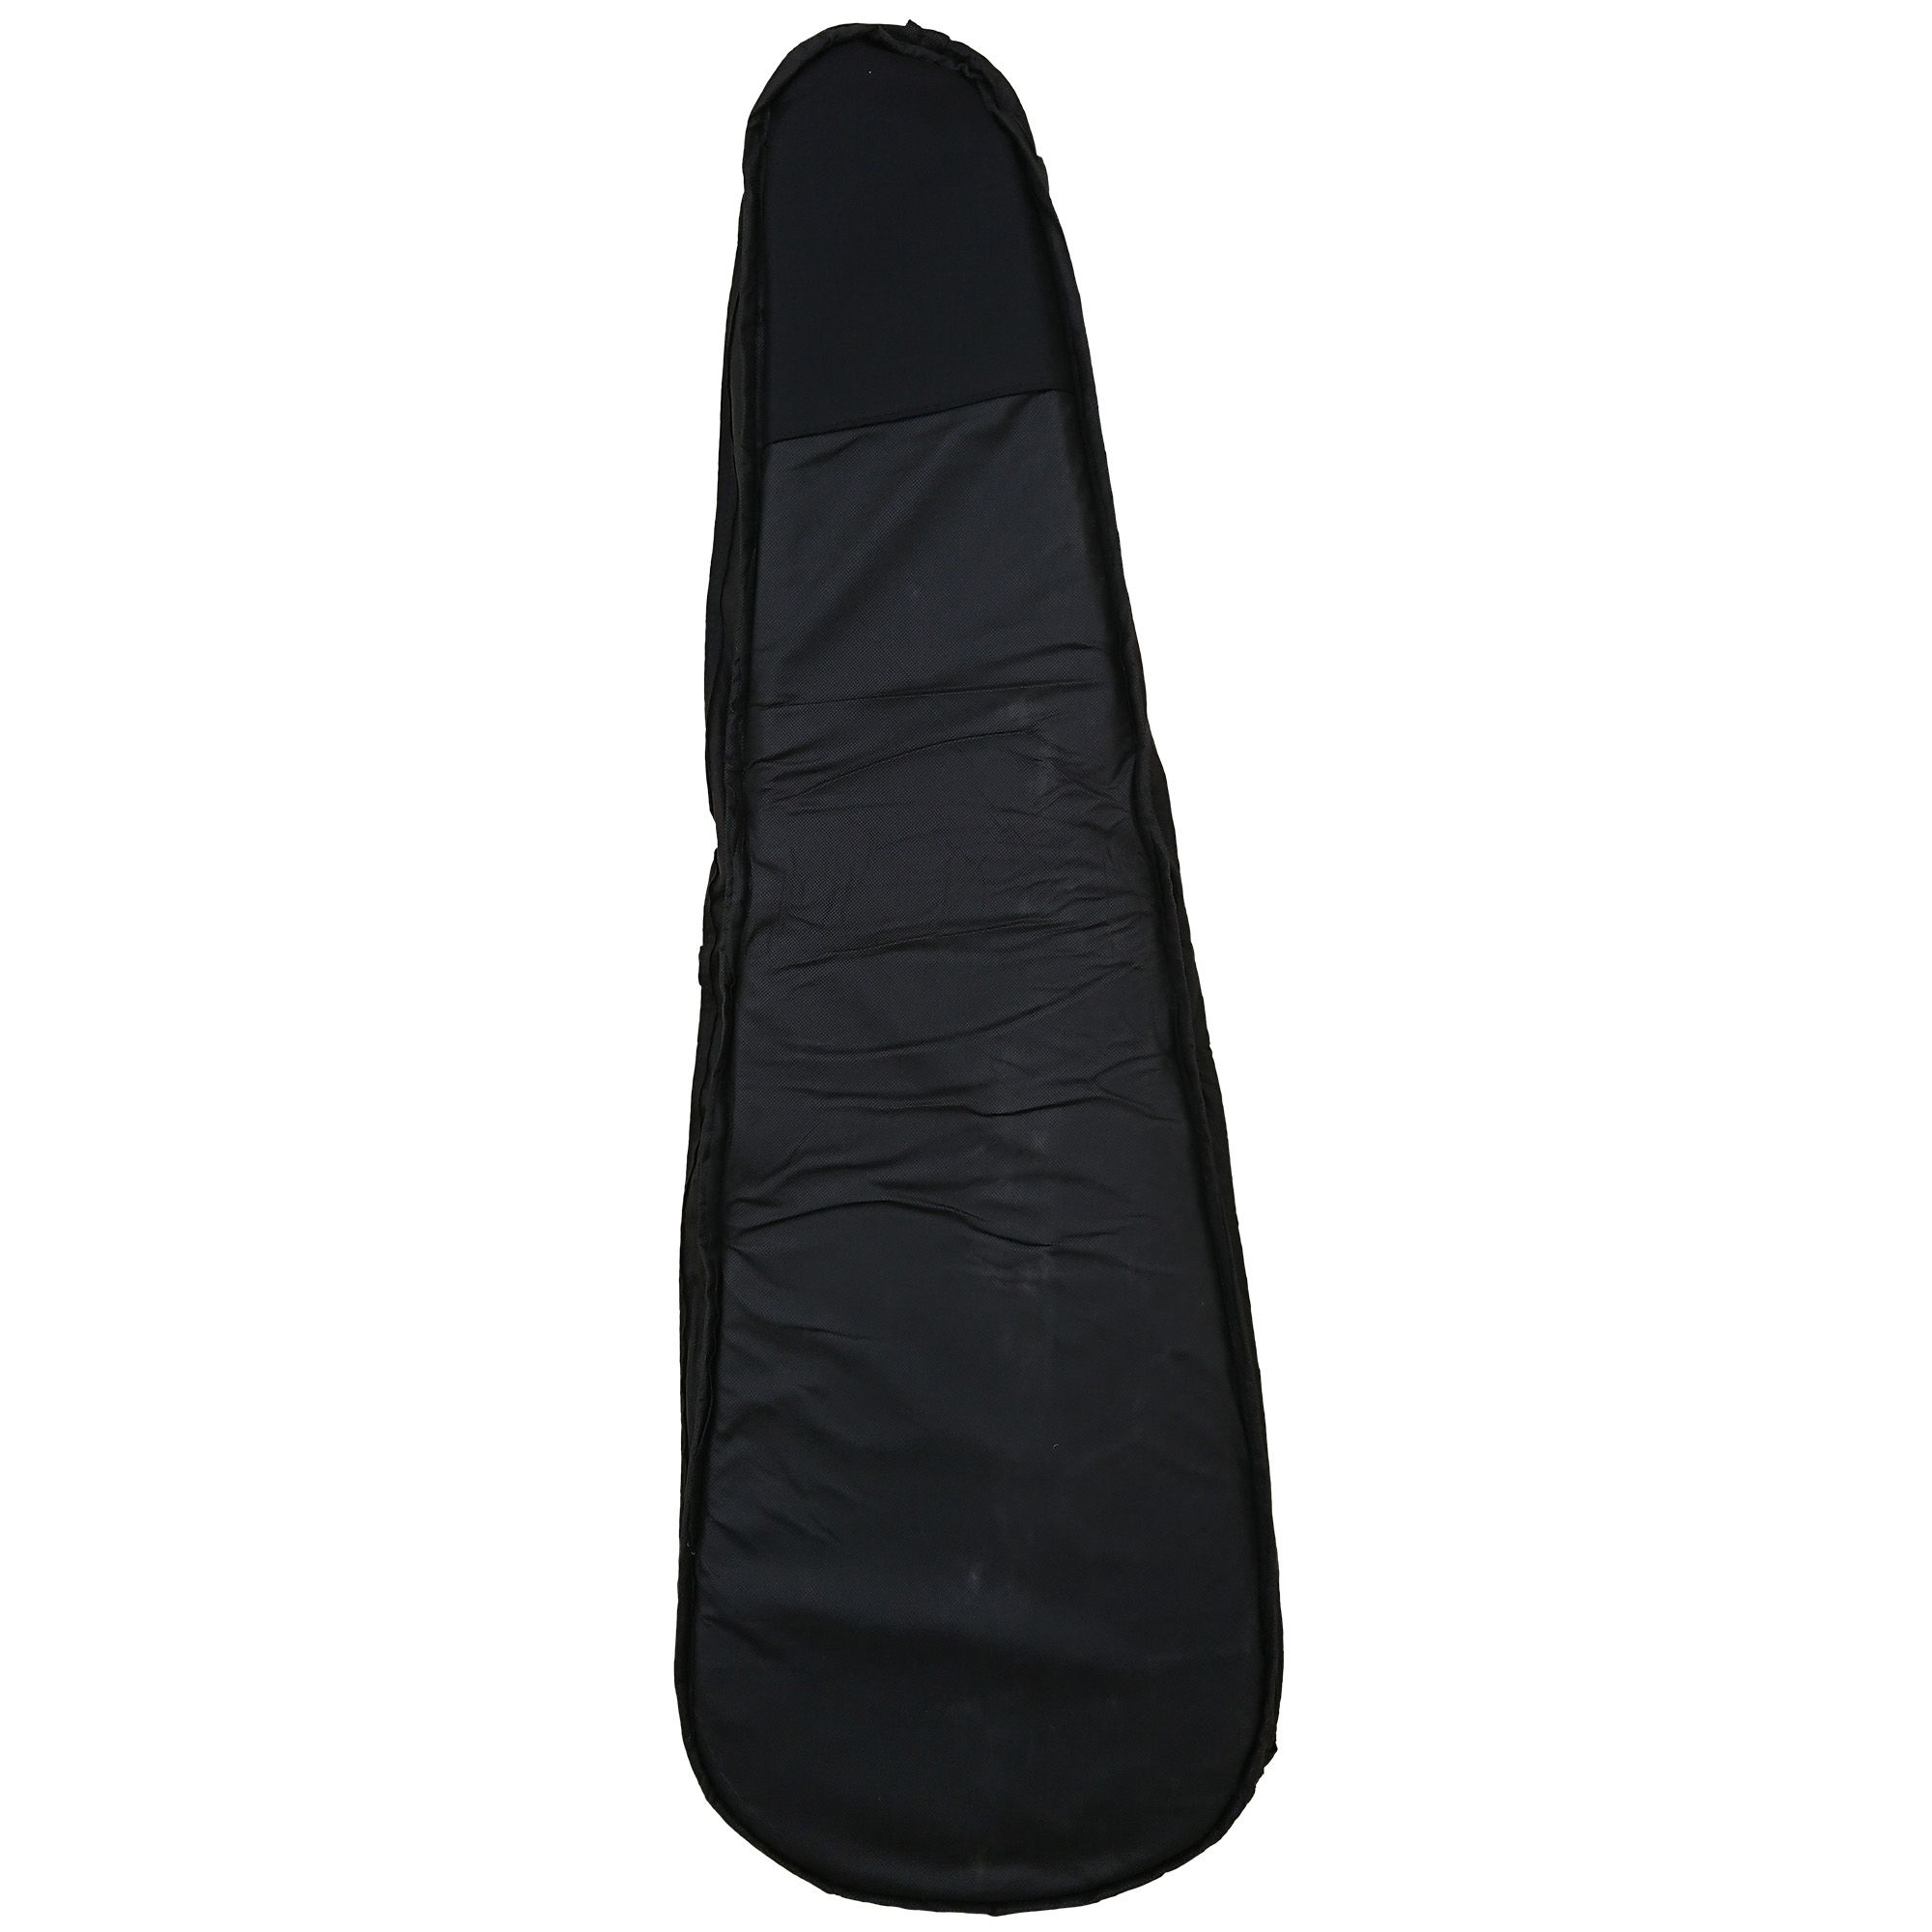 Capa Bag para Guitarra Semi Case Gold CLAVE & BAG. Totalmente acolchoada, alça de mão e de mochila. EX 507